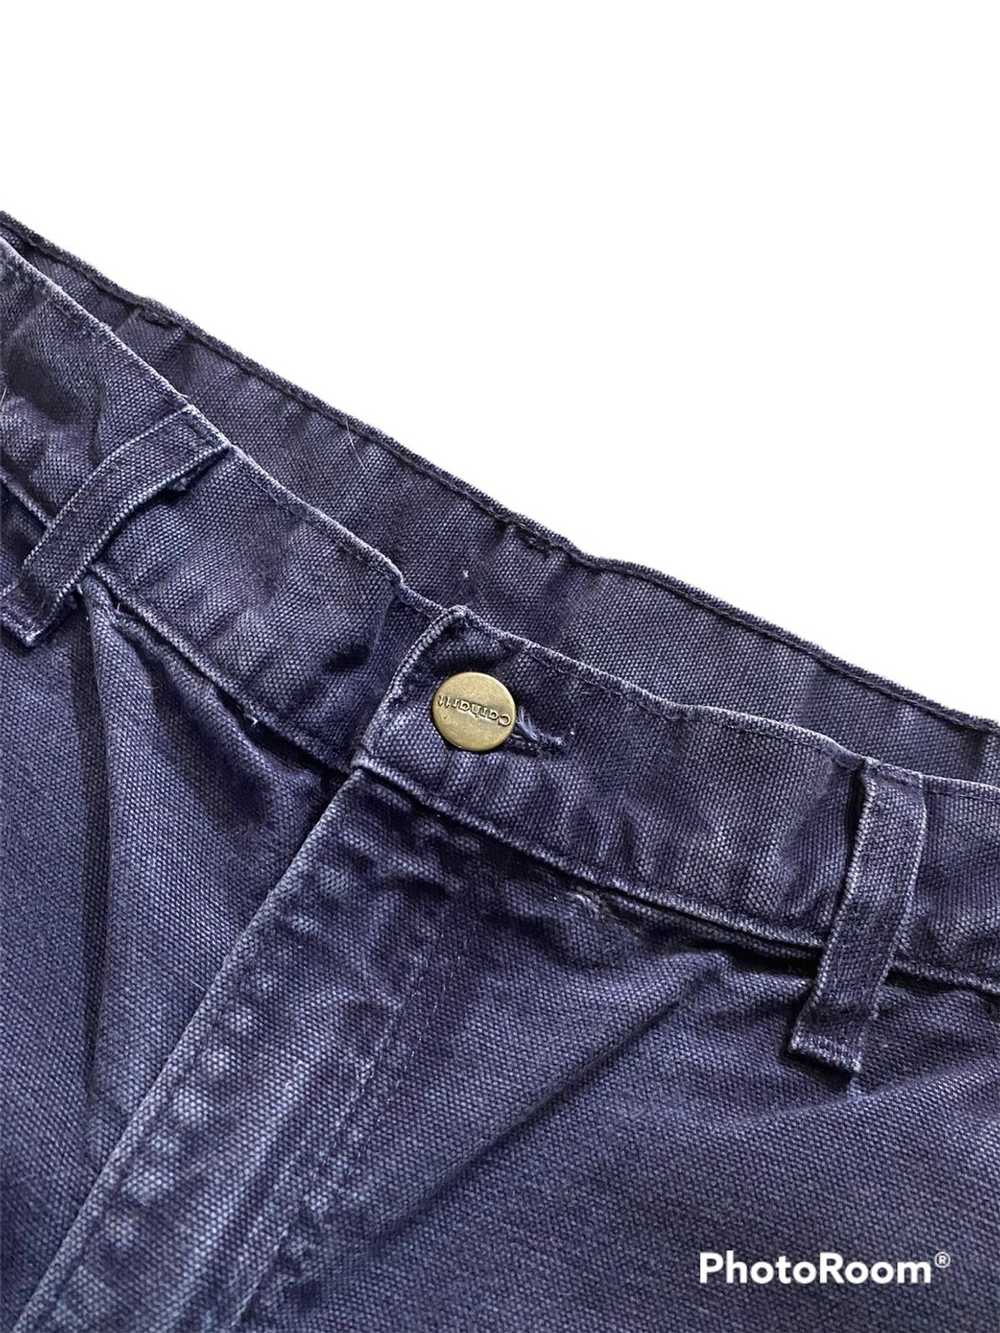 Carhartt × Vintage Rare Deep purple Carharrt pants - image 3